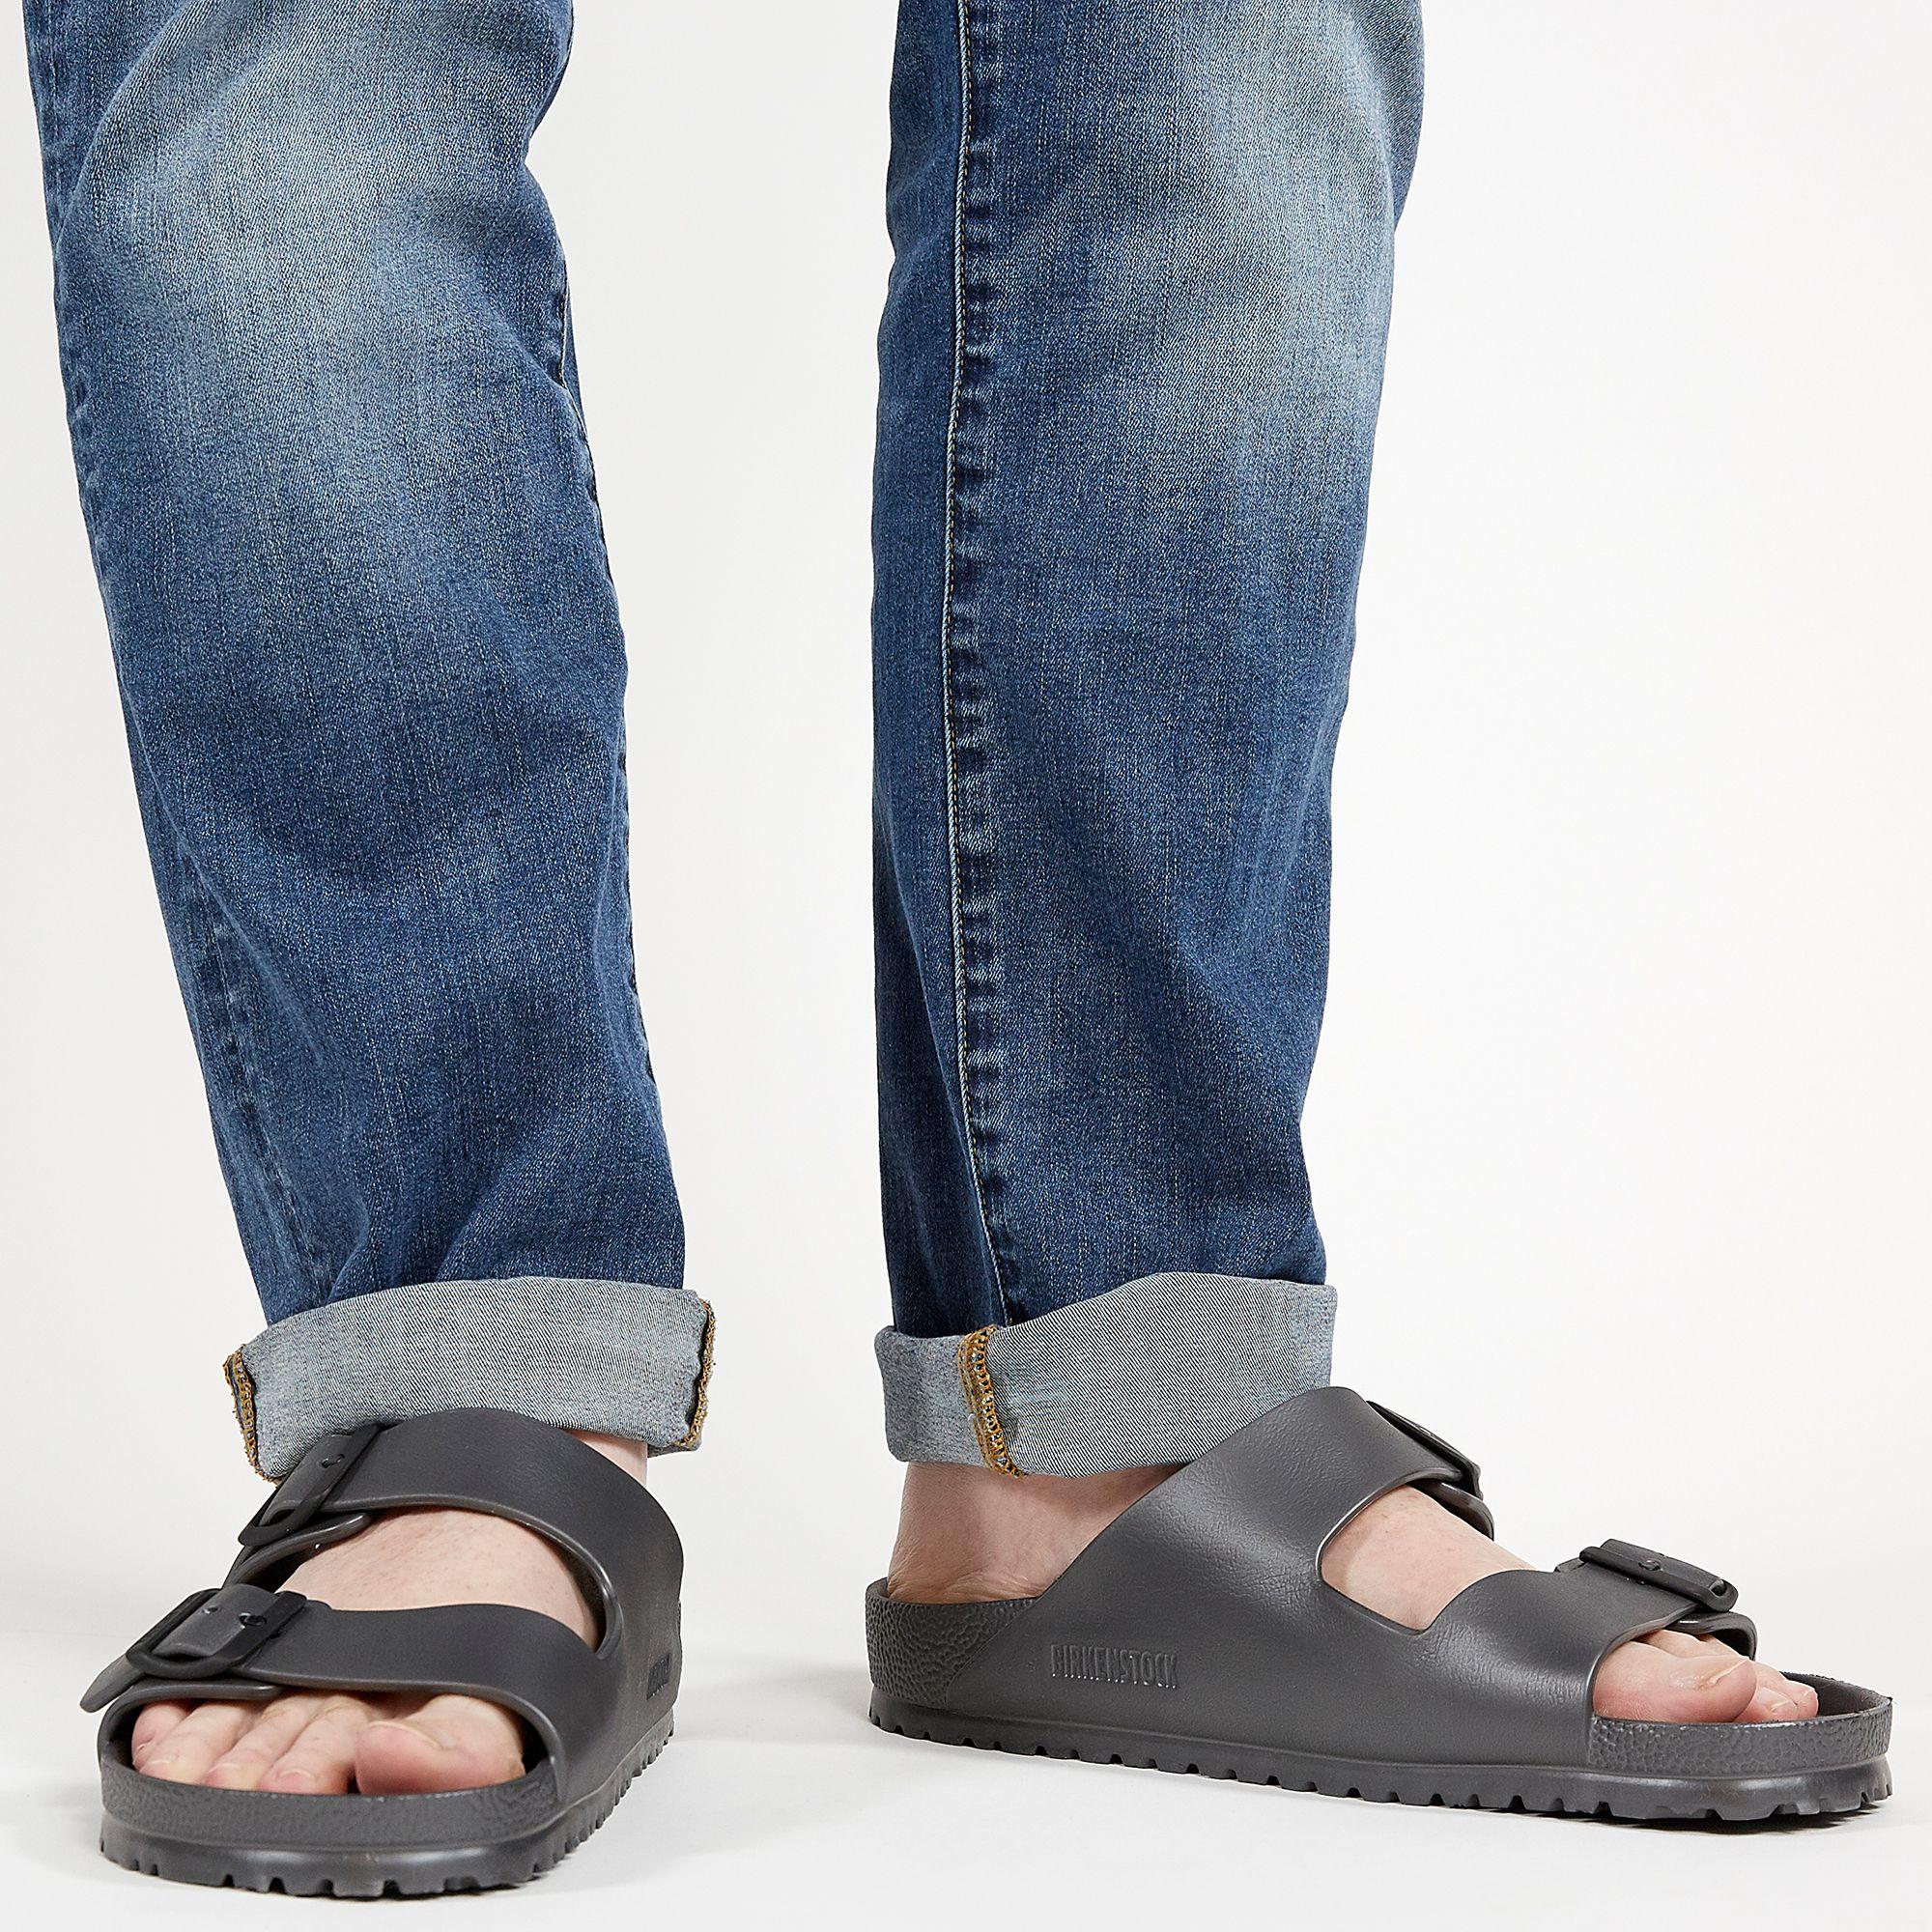 birkenstock men's eva arizona sandal